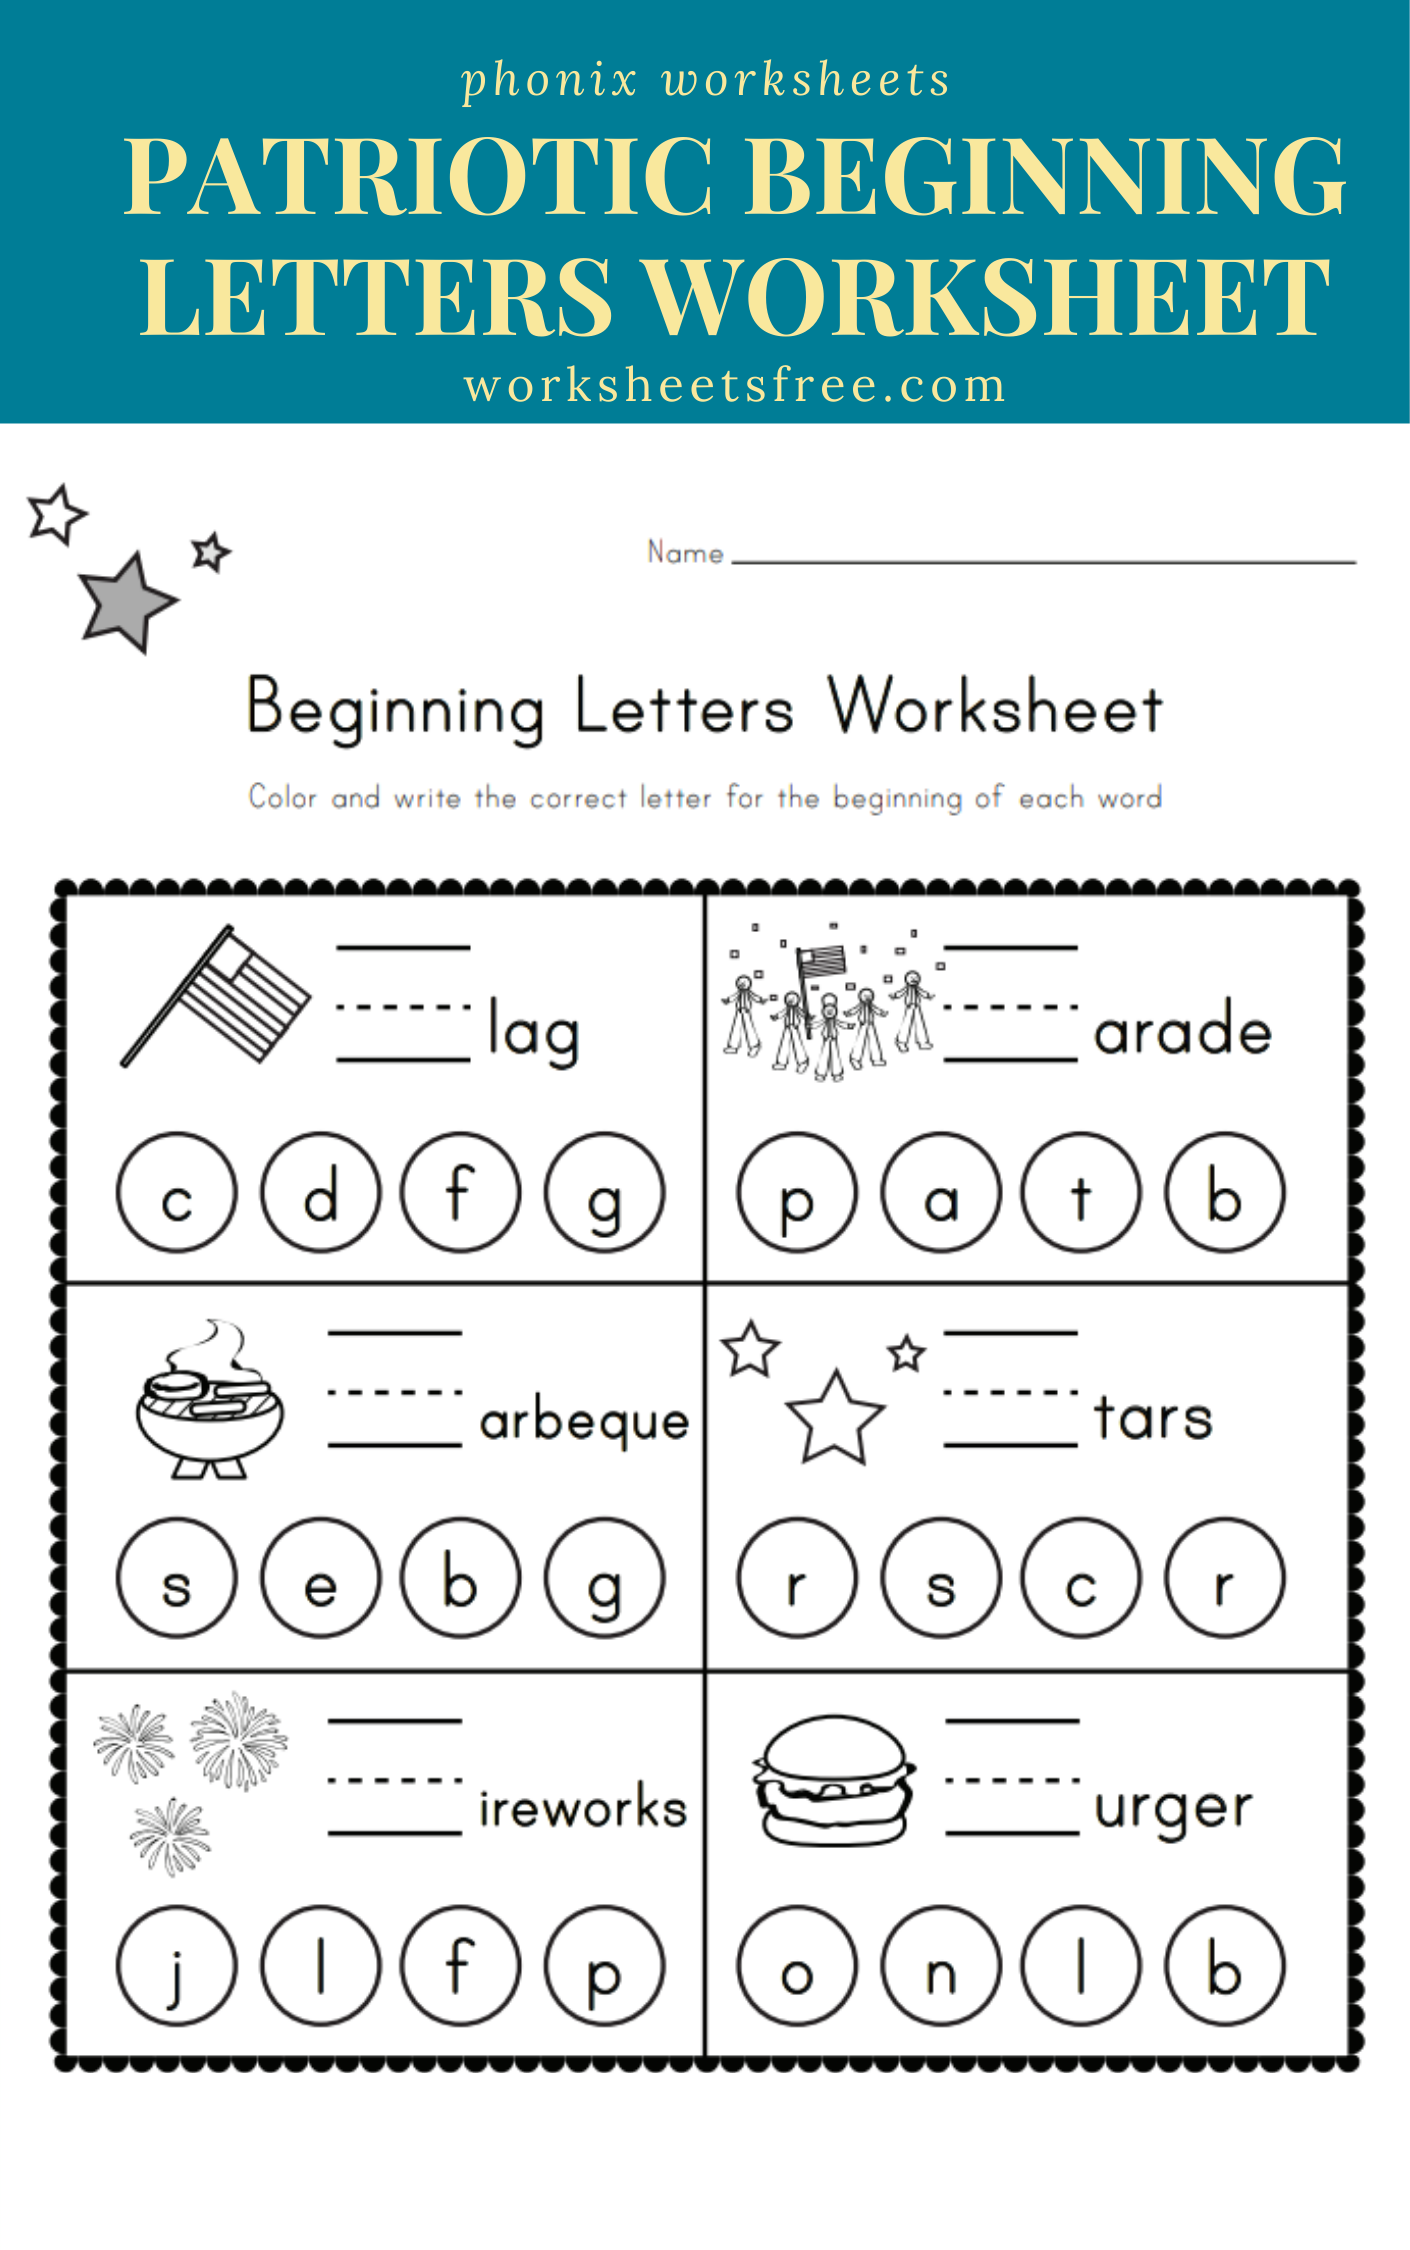 patriotic-beginning-letters-worksheet-worksheets-free